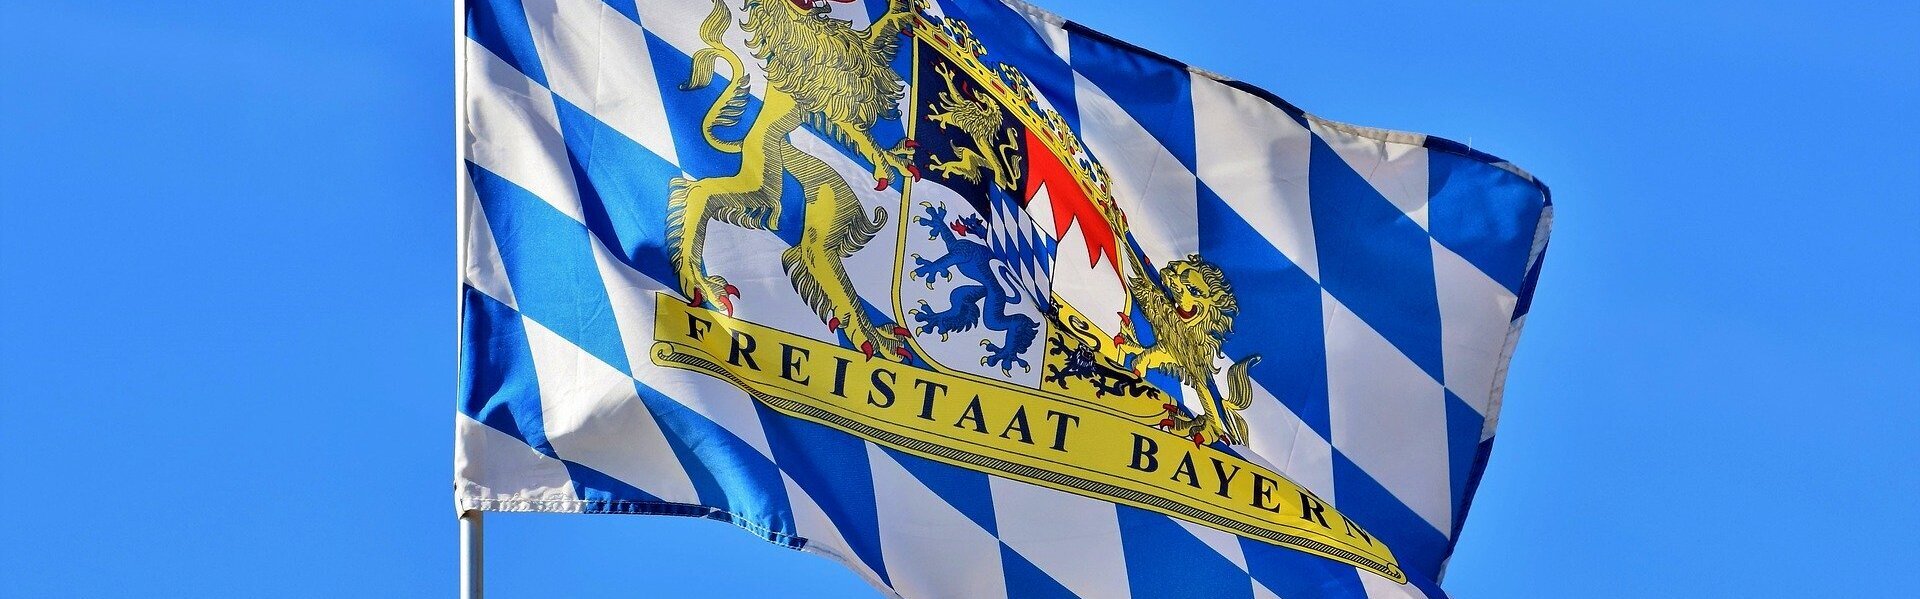 Das Bild zeigt die Flagge Bayerns